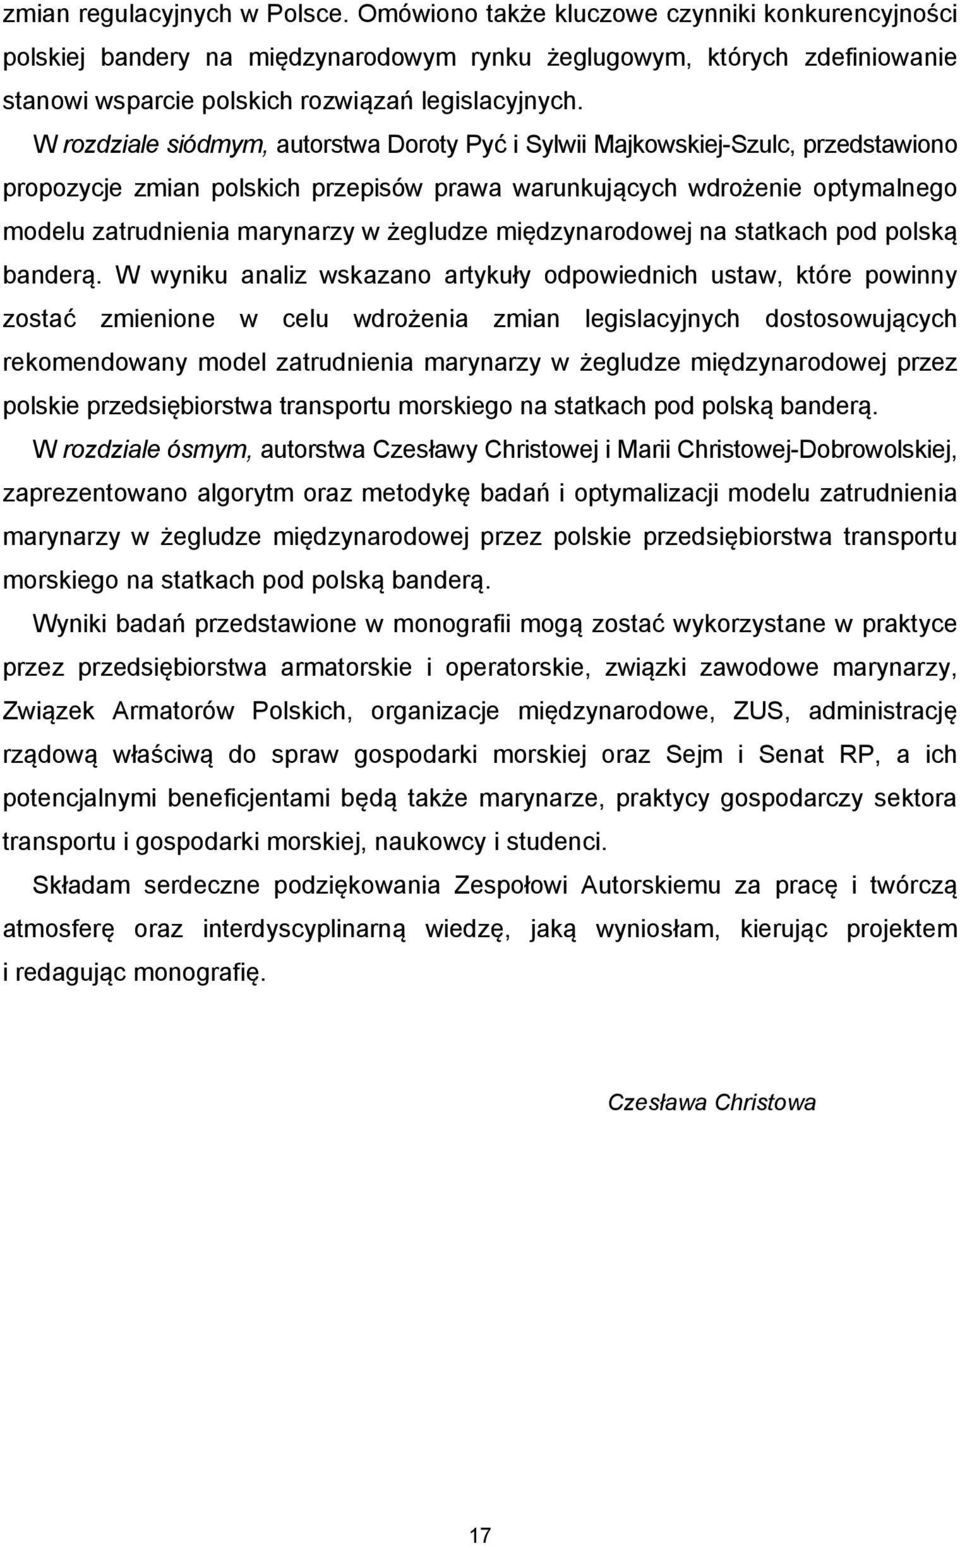 W rozdziale siódmym, autorstwa Doroty Pyć i Sylwii Majkowskiej-Szulc, przedstawiono propozycje zmian polskich przepisów prawa warunkujących wdrożenie optymalnego modelu zatrudnienia marynarzy w